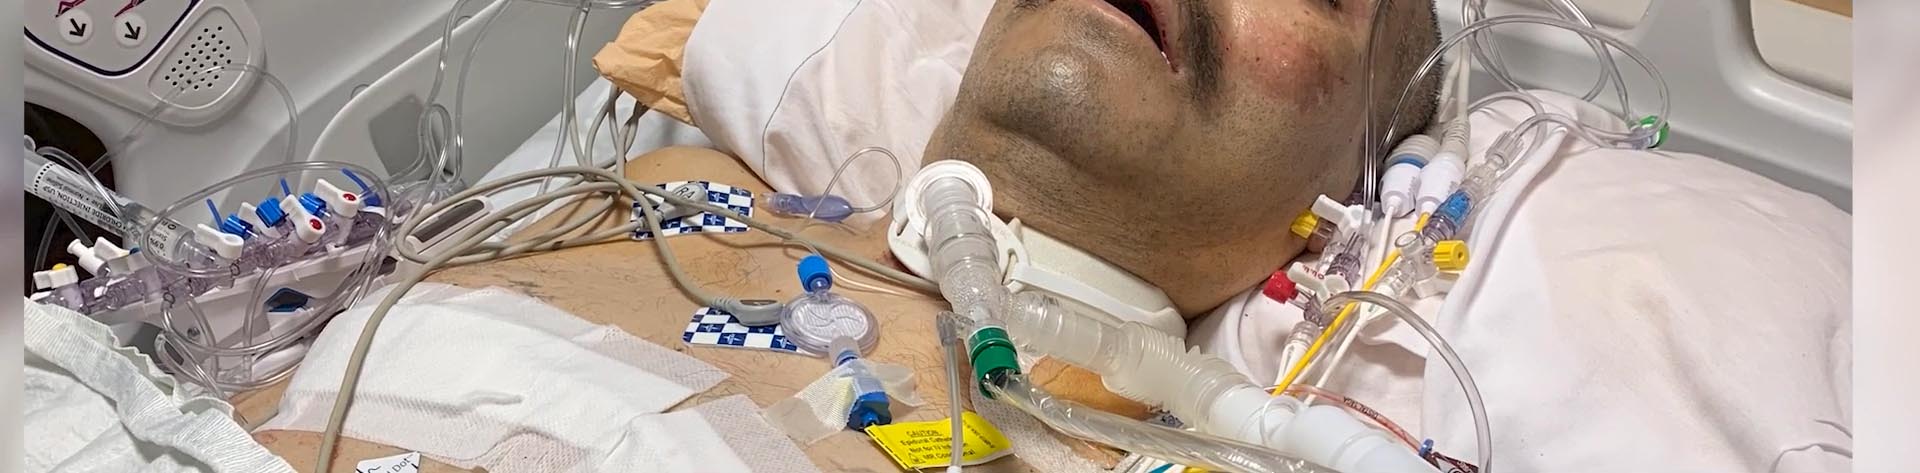 Jose Graciano dans son lit d'hôpital, se remet de COVID